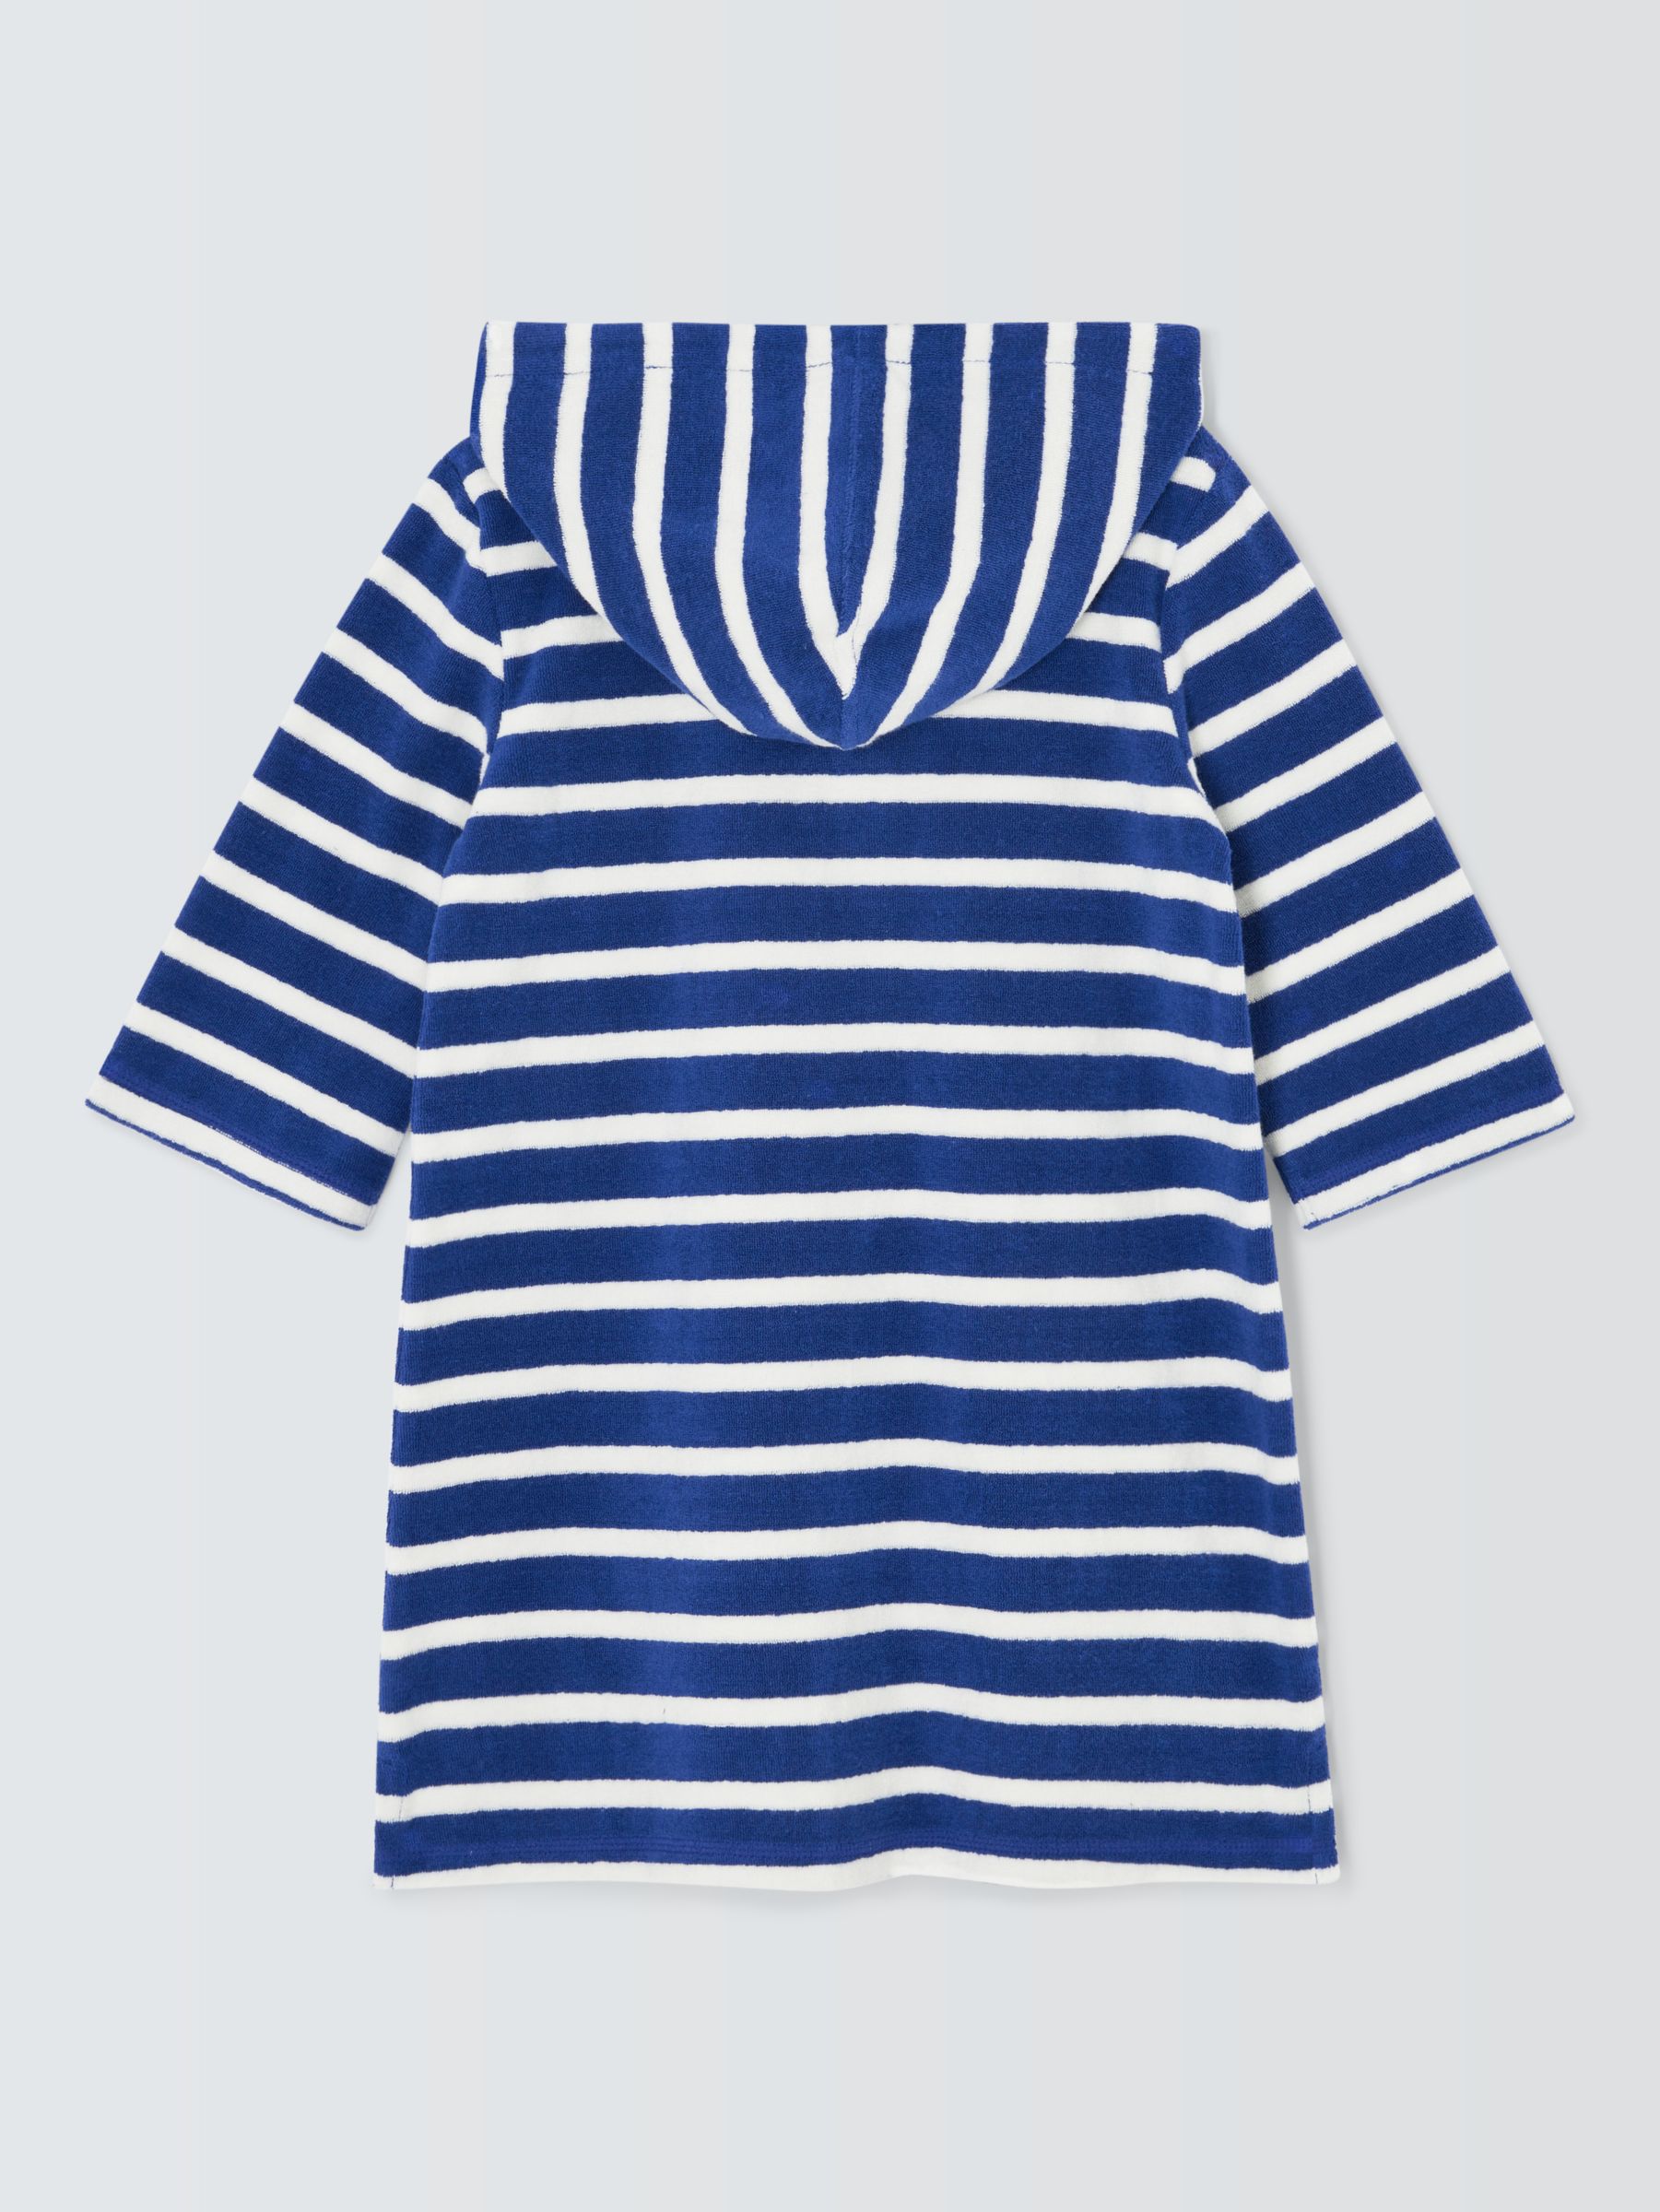 John Lewis Kids' Stripe Zip Through Towelling Poncho, Blue, 3 years